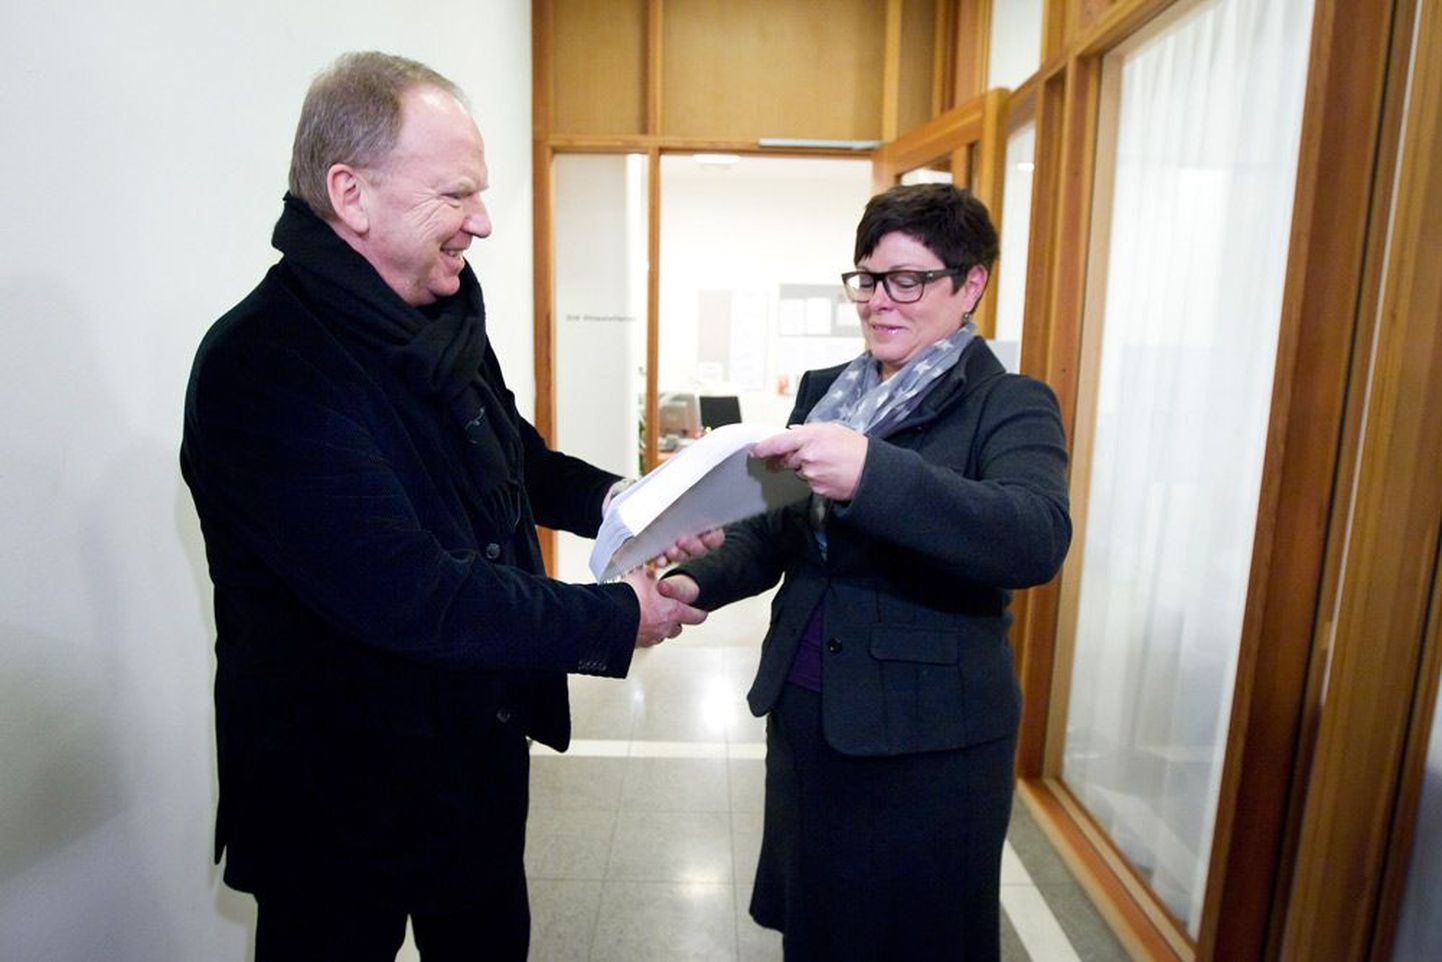 Breivikit analüüsinud psühhiaater Torgeir Husby (vasakul) andis eile Oslos oma hinnangu üle ringkonnakohtunik Nina Opsahlile.